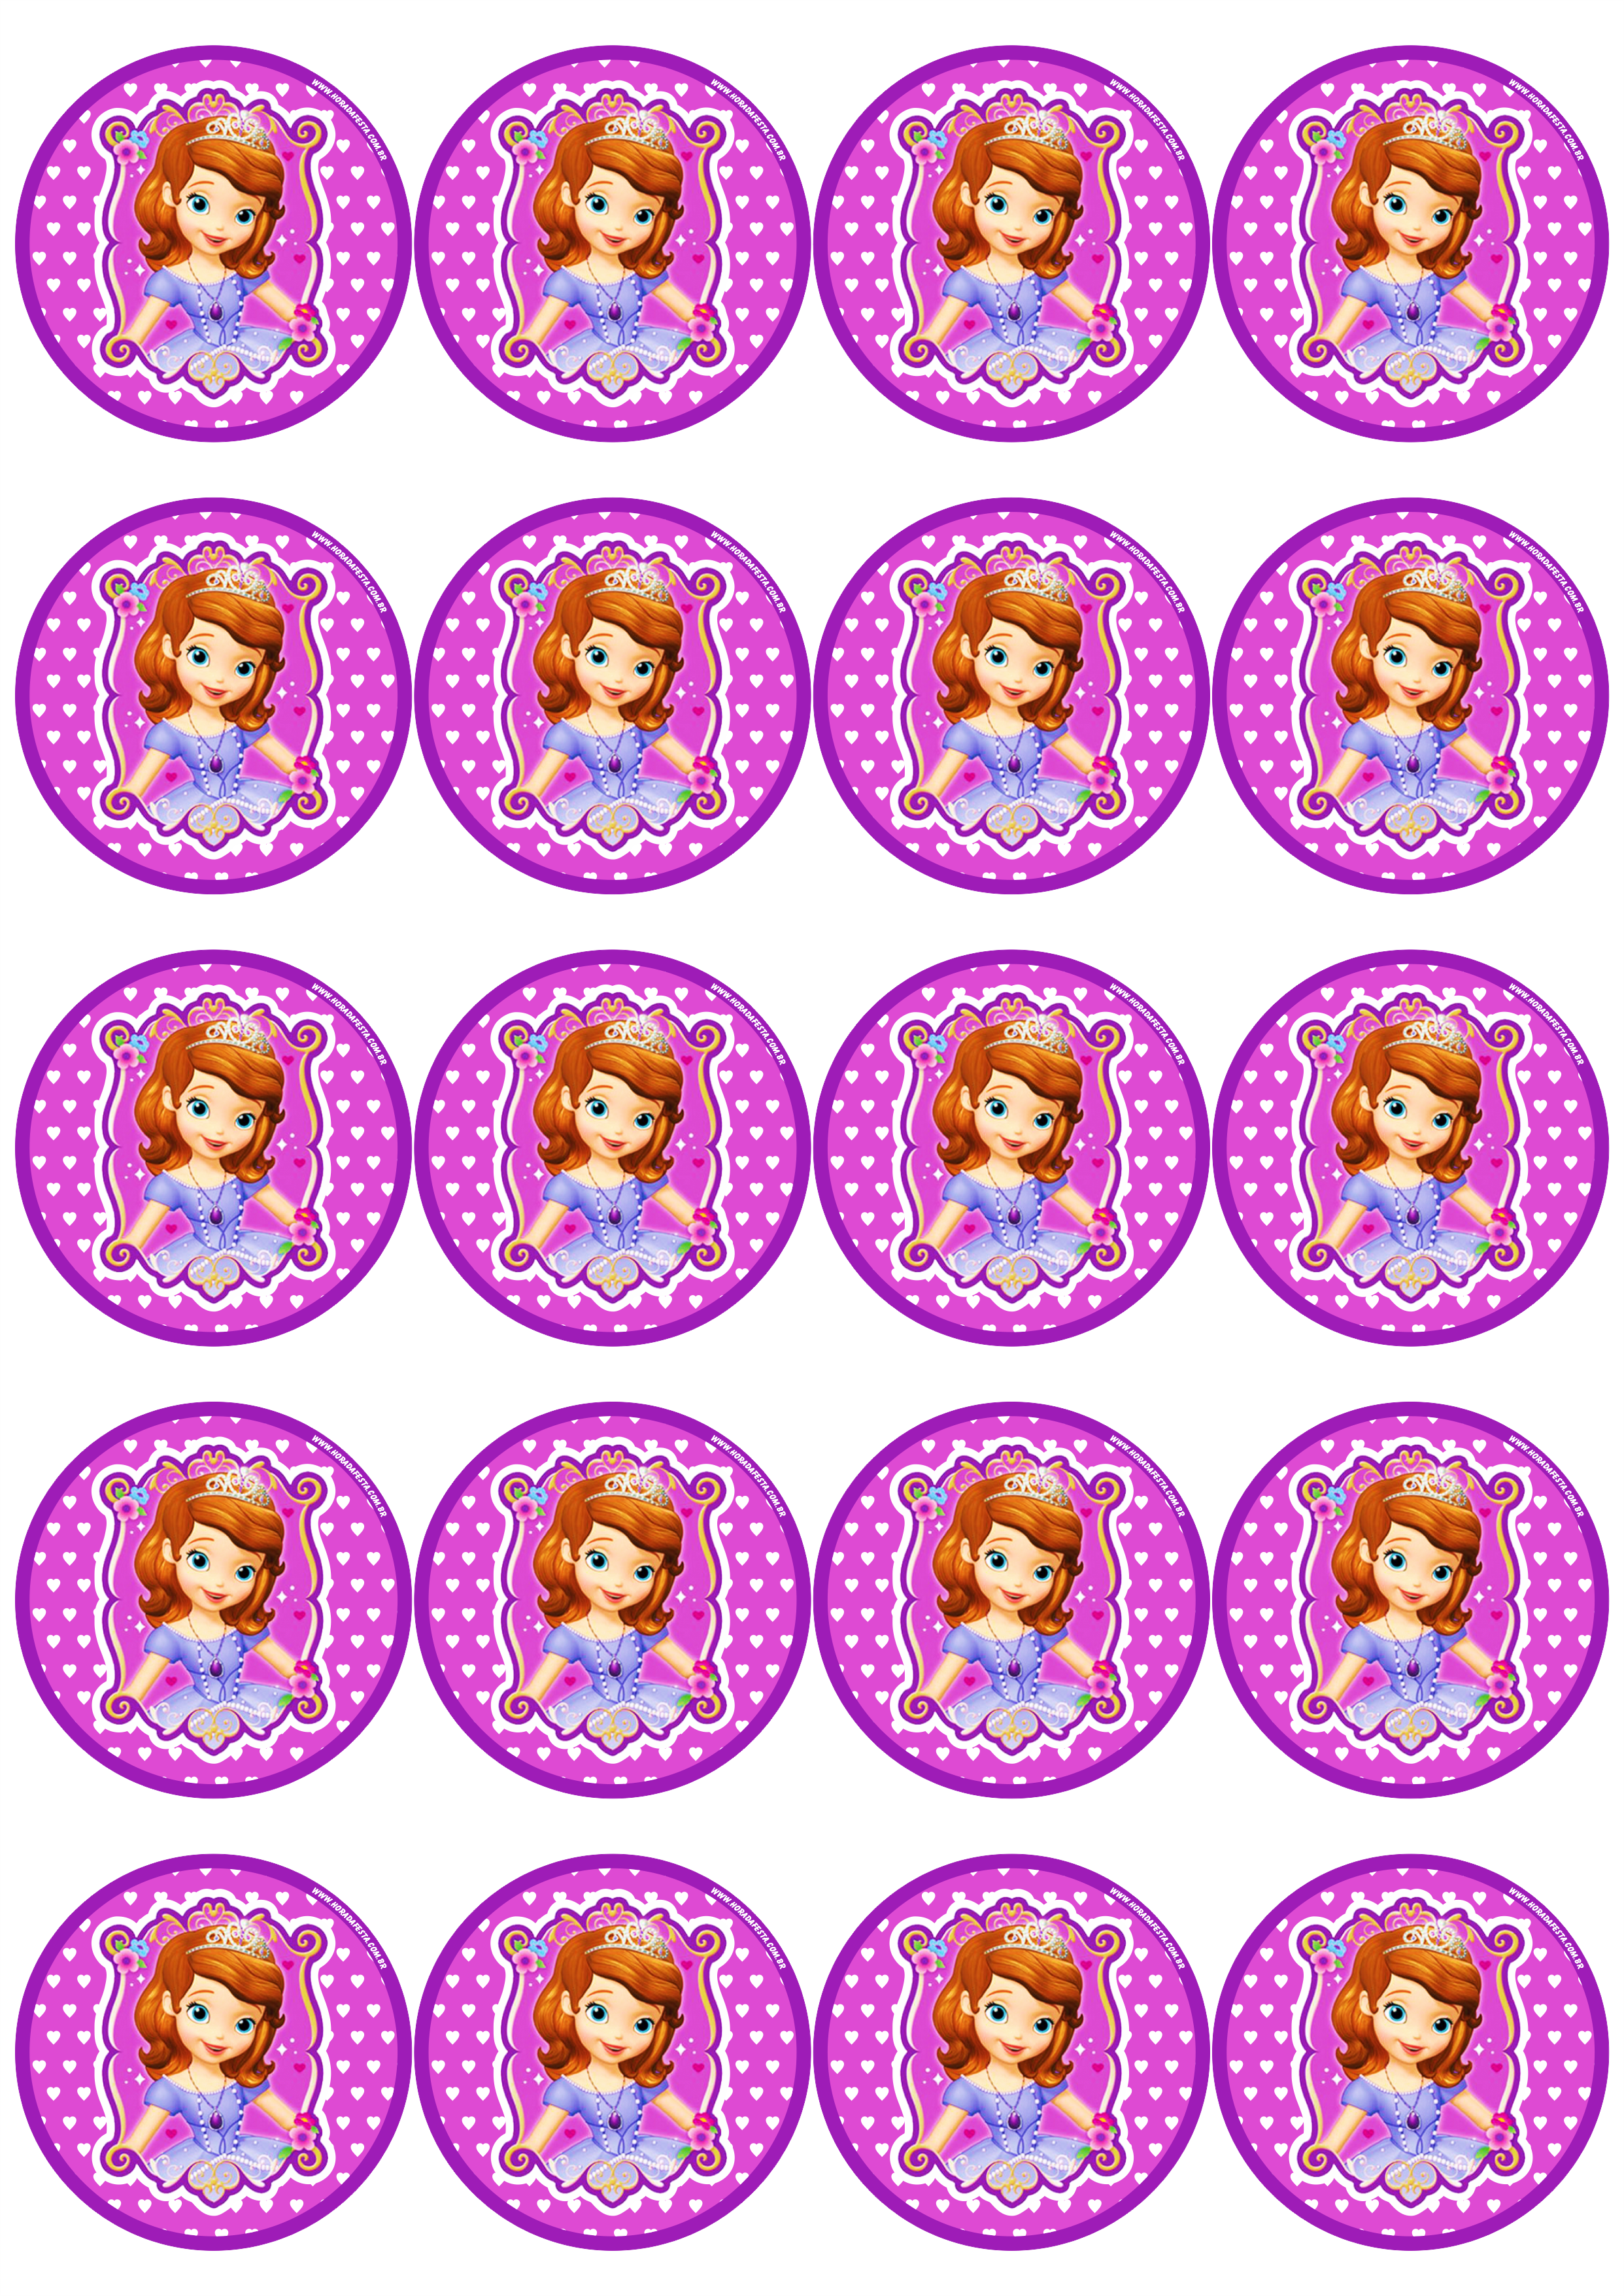 Princesa Sofia adesivo redondo tag sticker painel festa de aniversário infantil menina 20 imagens png